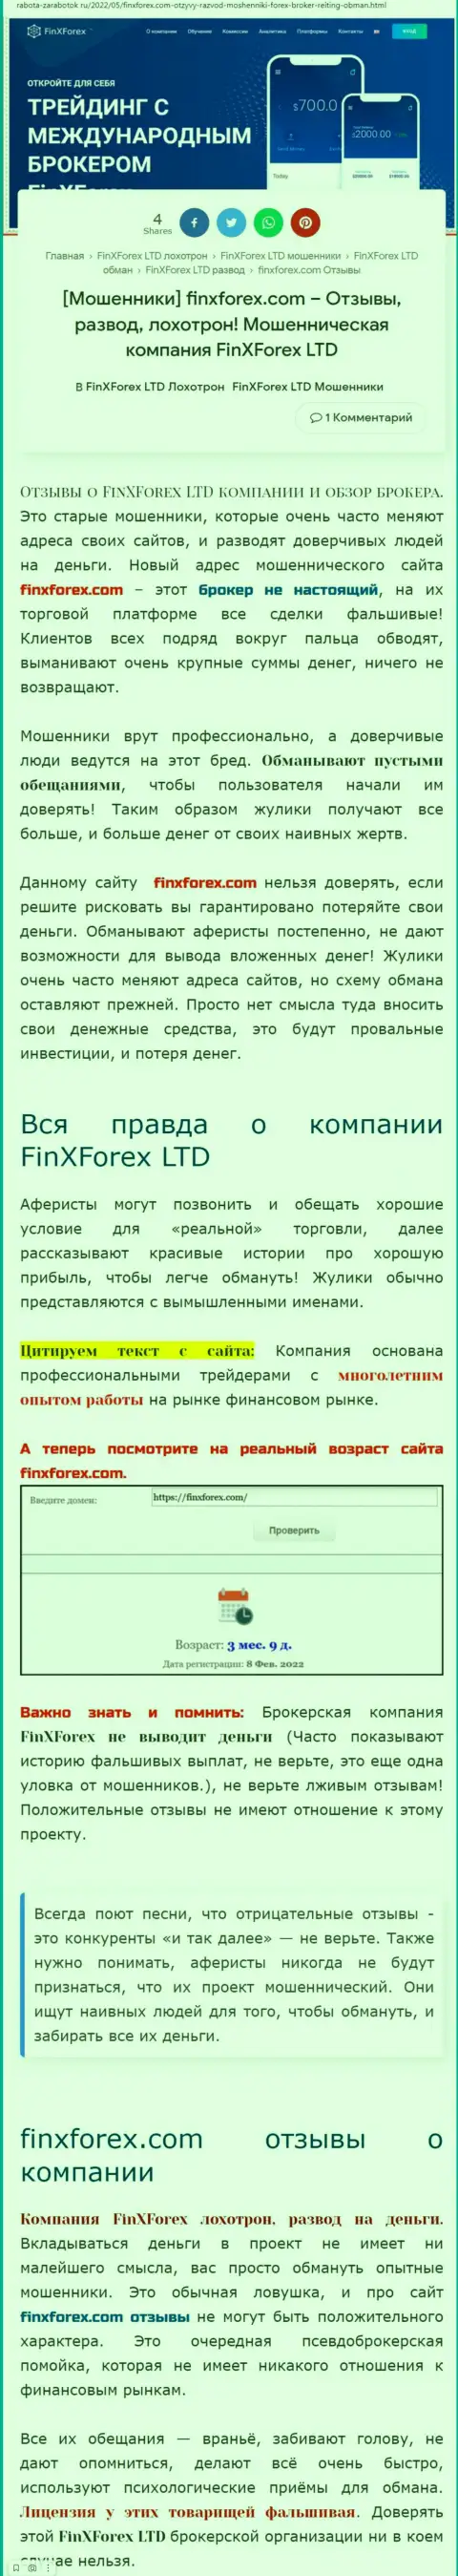 Автор обзора о FinXForex утверждает, что в организации FinXForex дурачат